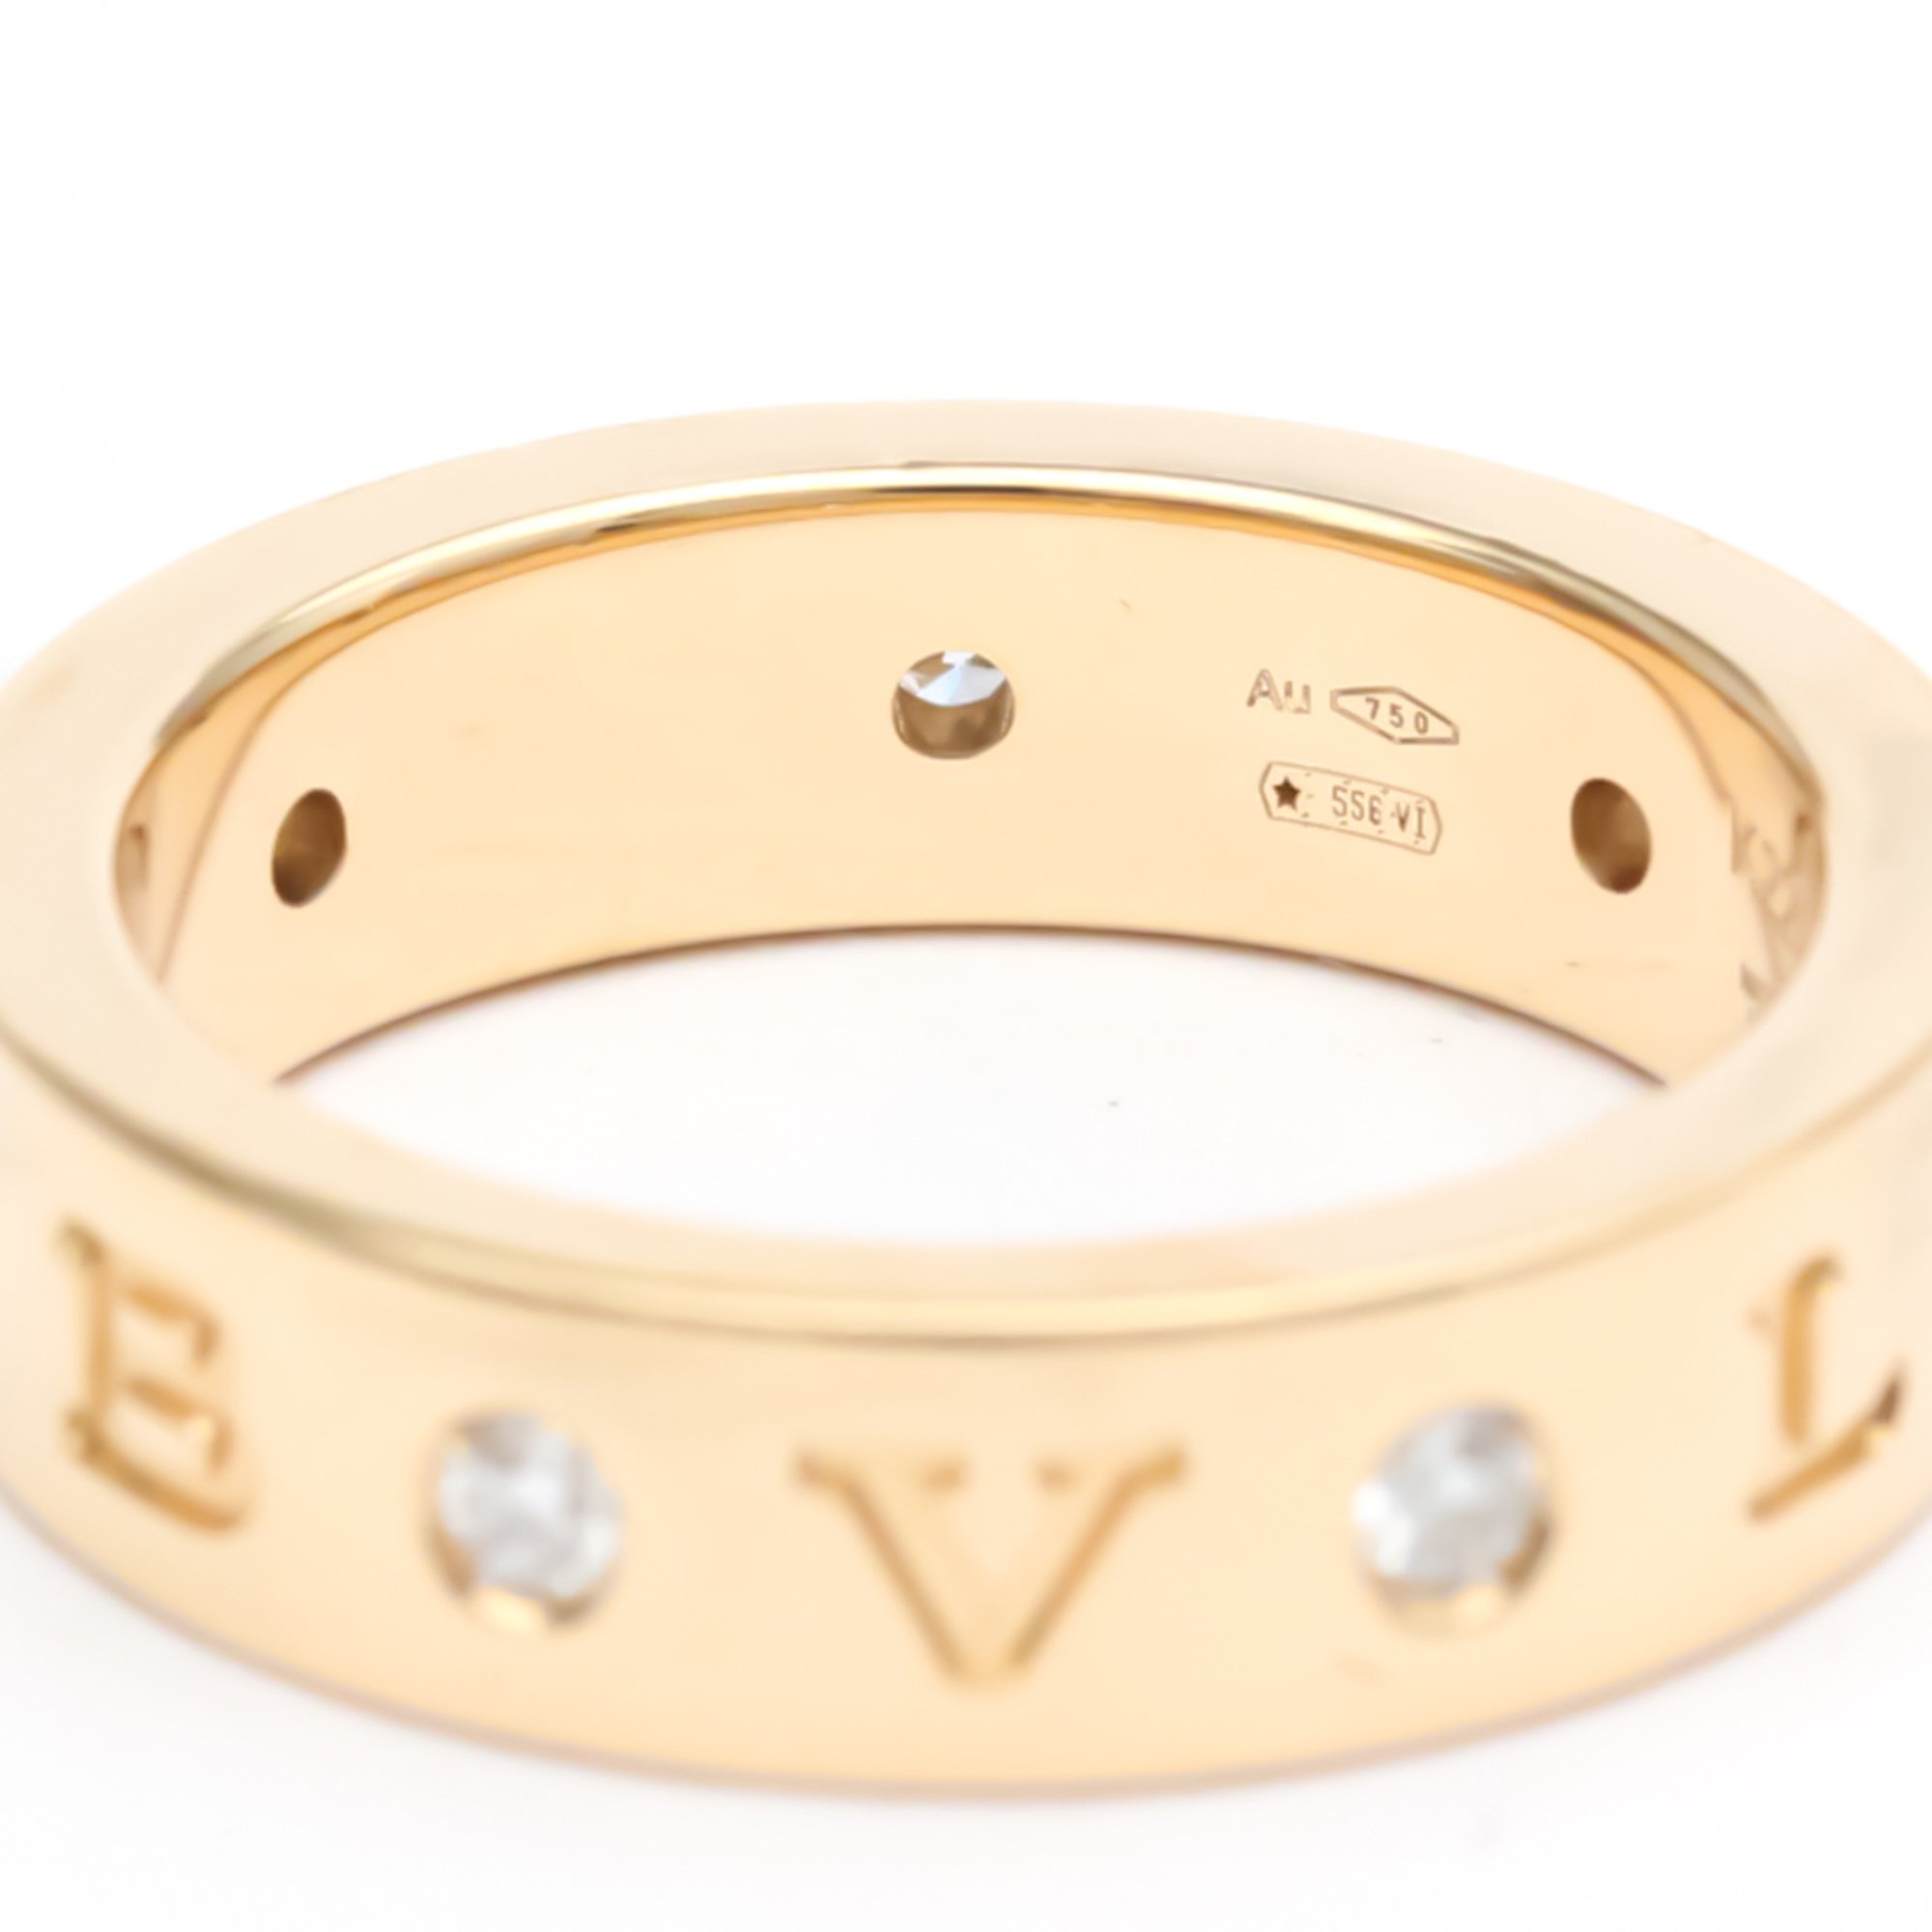 ブルガリ (BVLGARI) ダブルロゴ ローマンソルベ リング ダイヤモンド #51 11号 K18 ピンクゴールド 指輪 (磨き仕上げ済み)【中古】